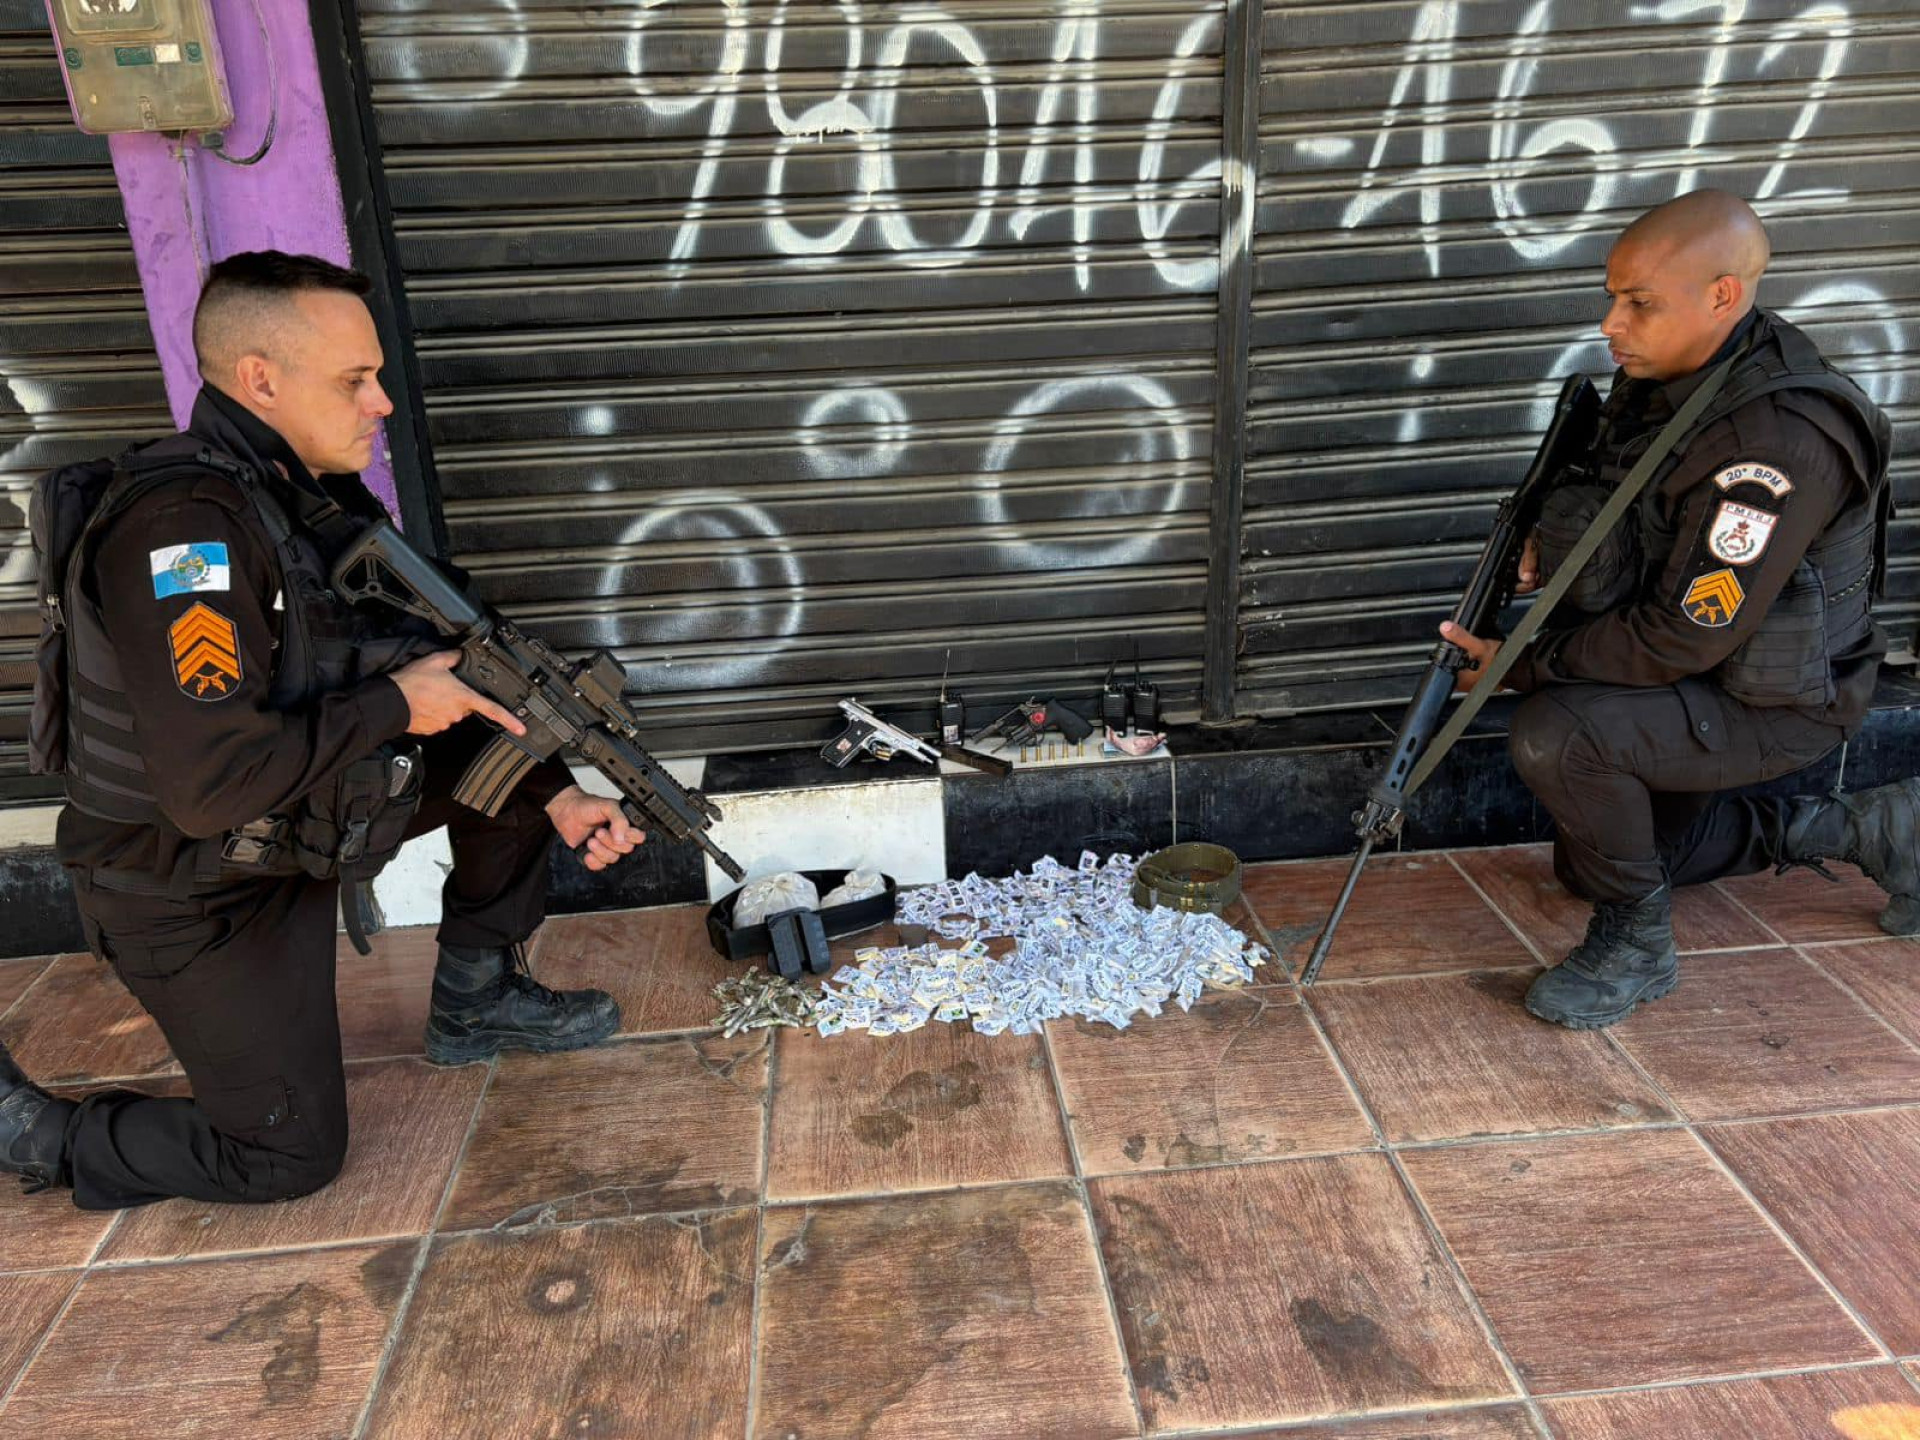 A operação dos policiais do 39º BPM (Belford Roxo) contou com apoio de policiais militares do 20º BPM (Mesquita) - Divulgação / Pmerj